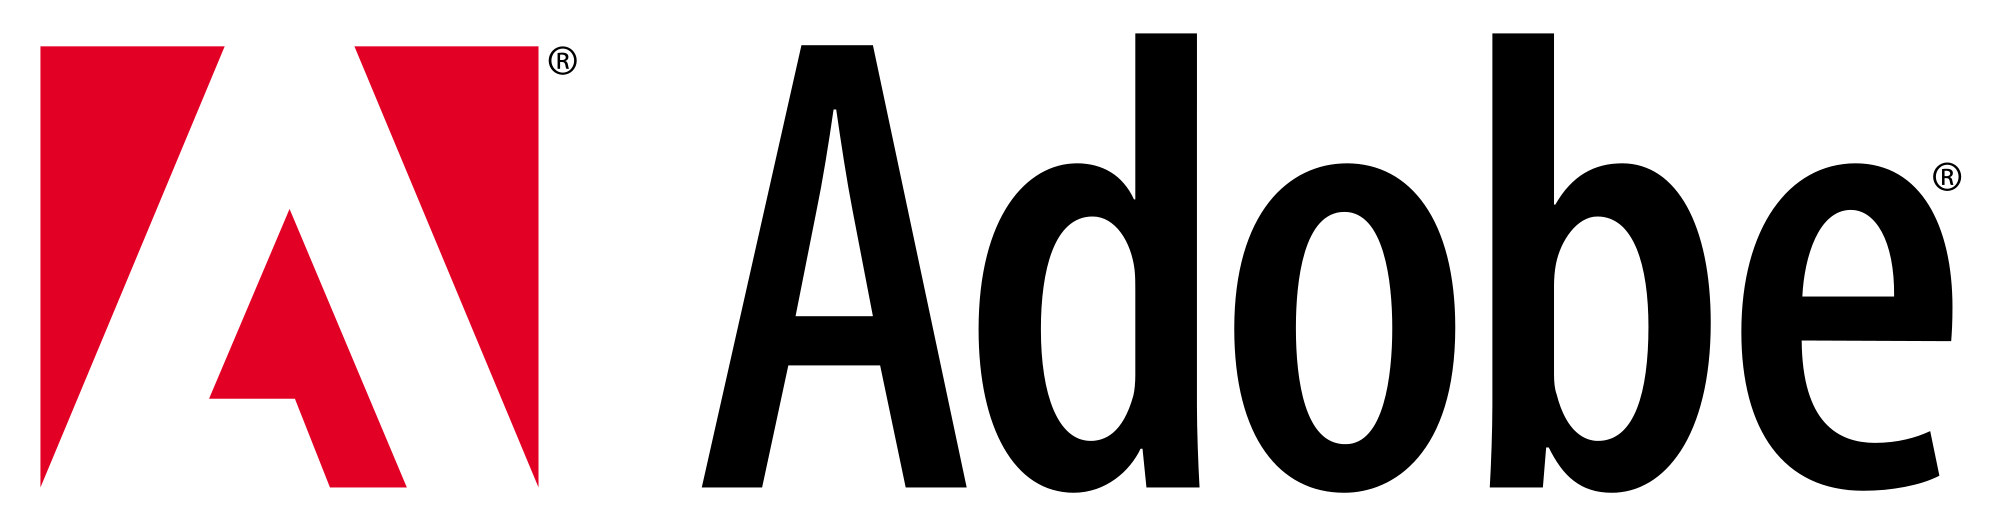 Adobe Logo - Adobe Systems Logo 002.svg